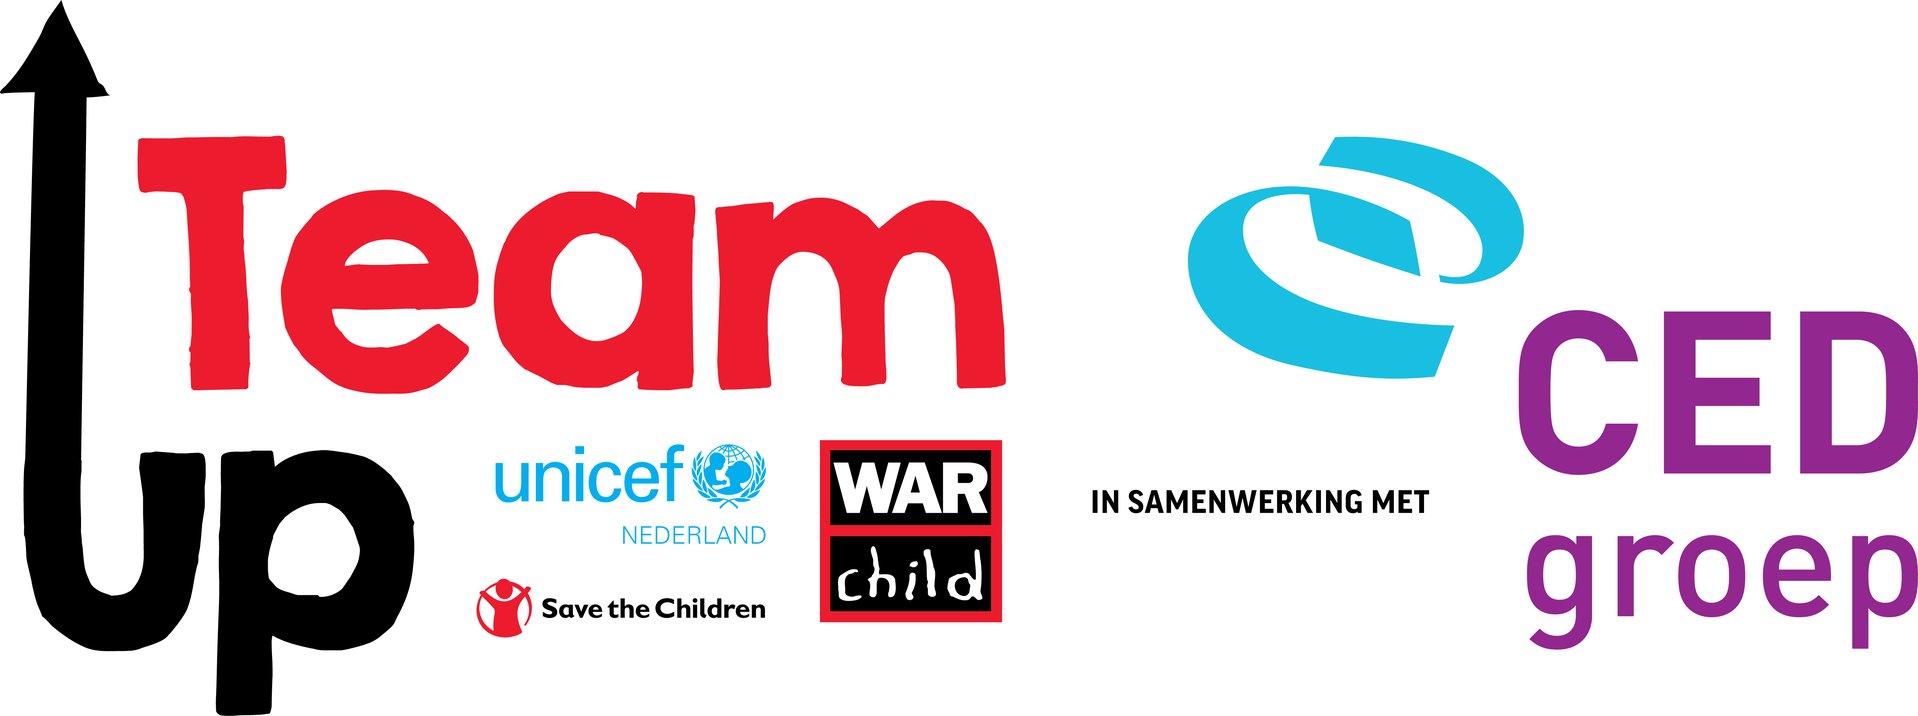 War Child TeamUp op school - logo met alle partners